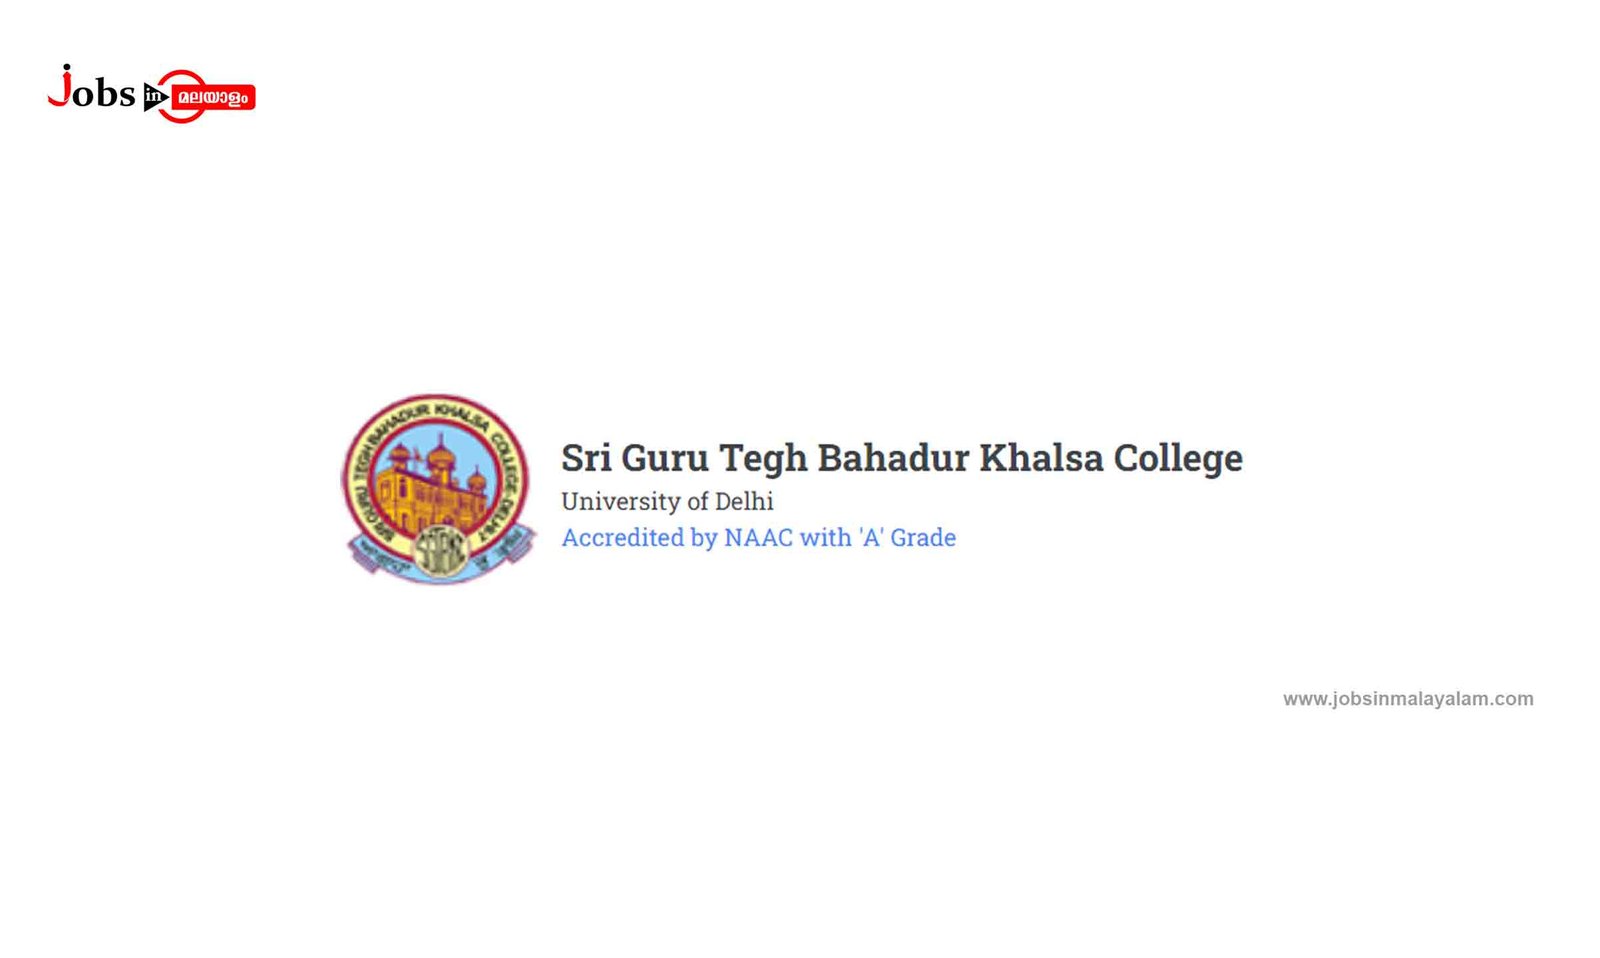 Sri Guru Tegh Bahadur Khalsa College (SGTB Khalsa College)